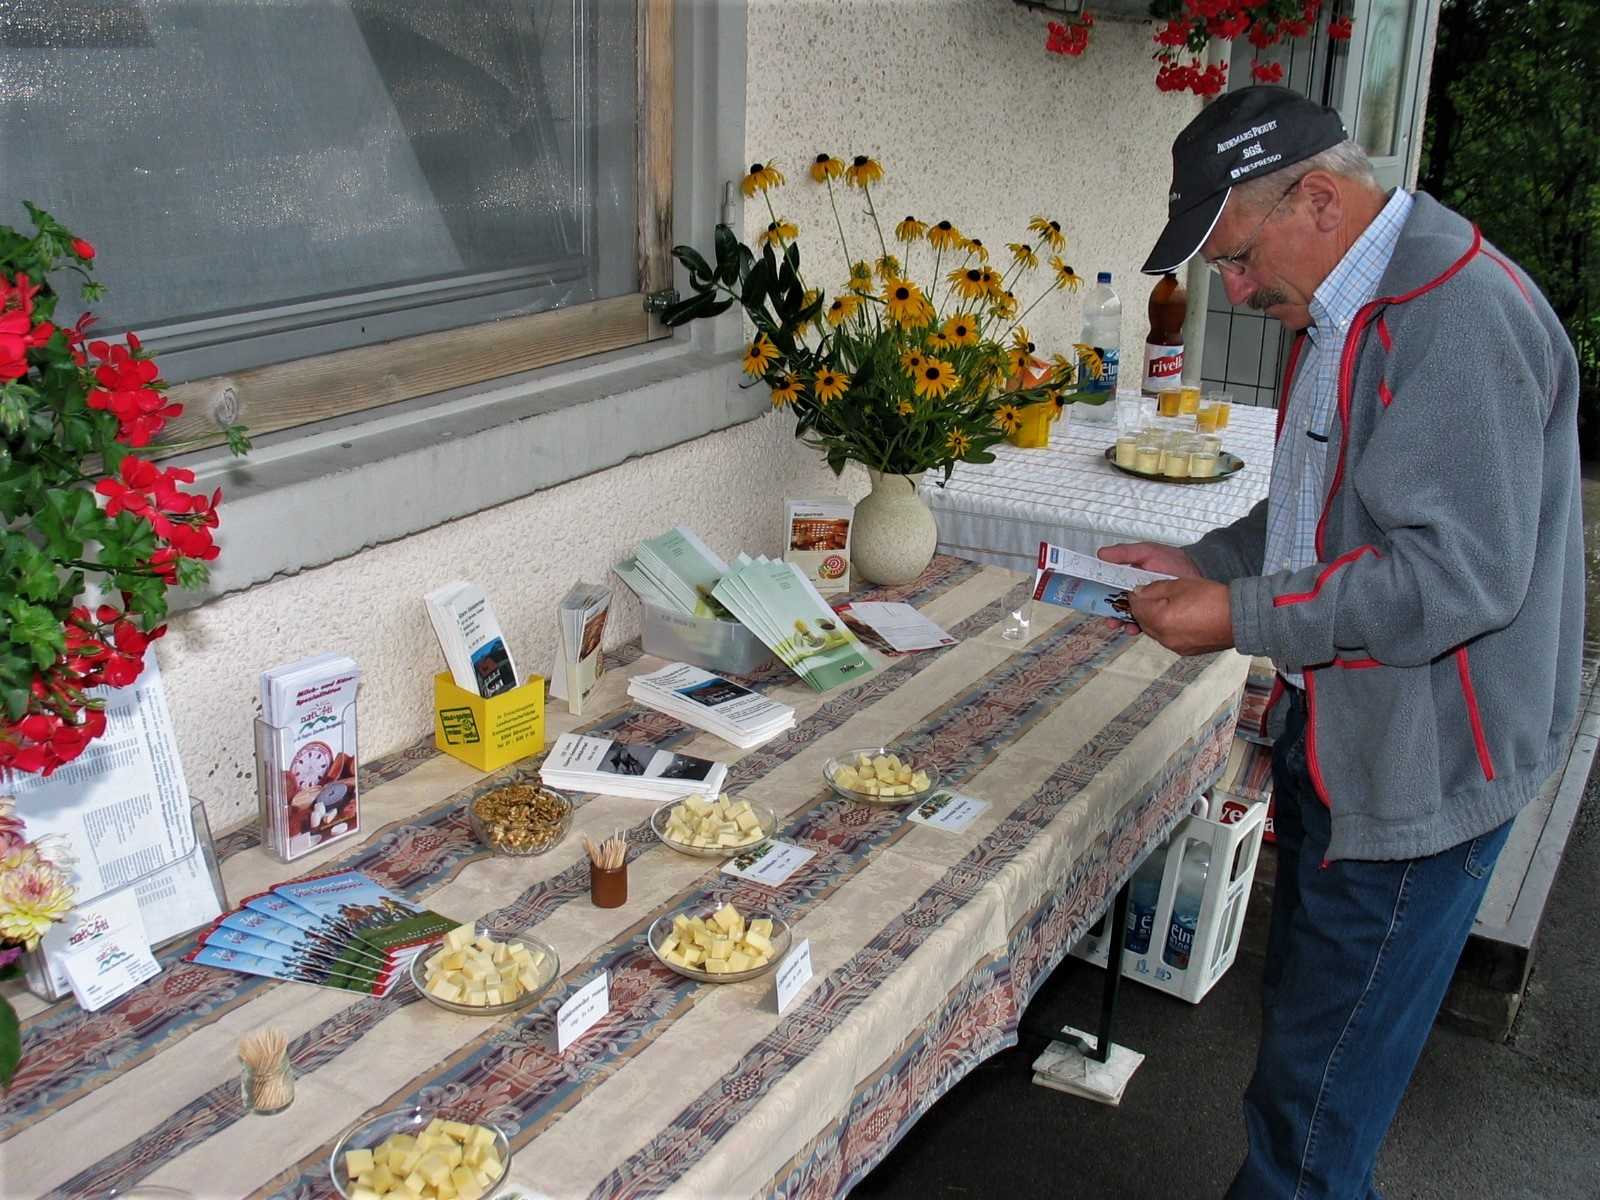 Jubiläum Käsereigenossenschaft Kleinbäretswil, Fredi Litschi beim Degustationsbuffet